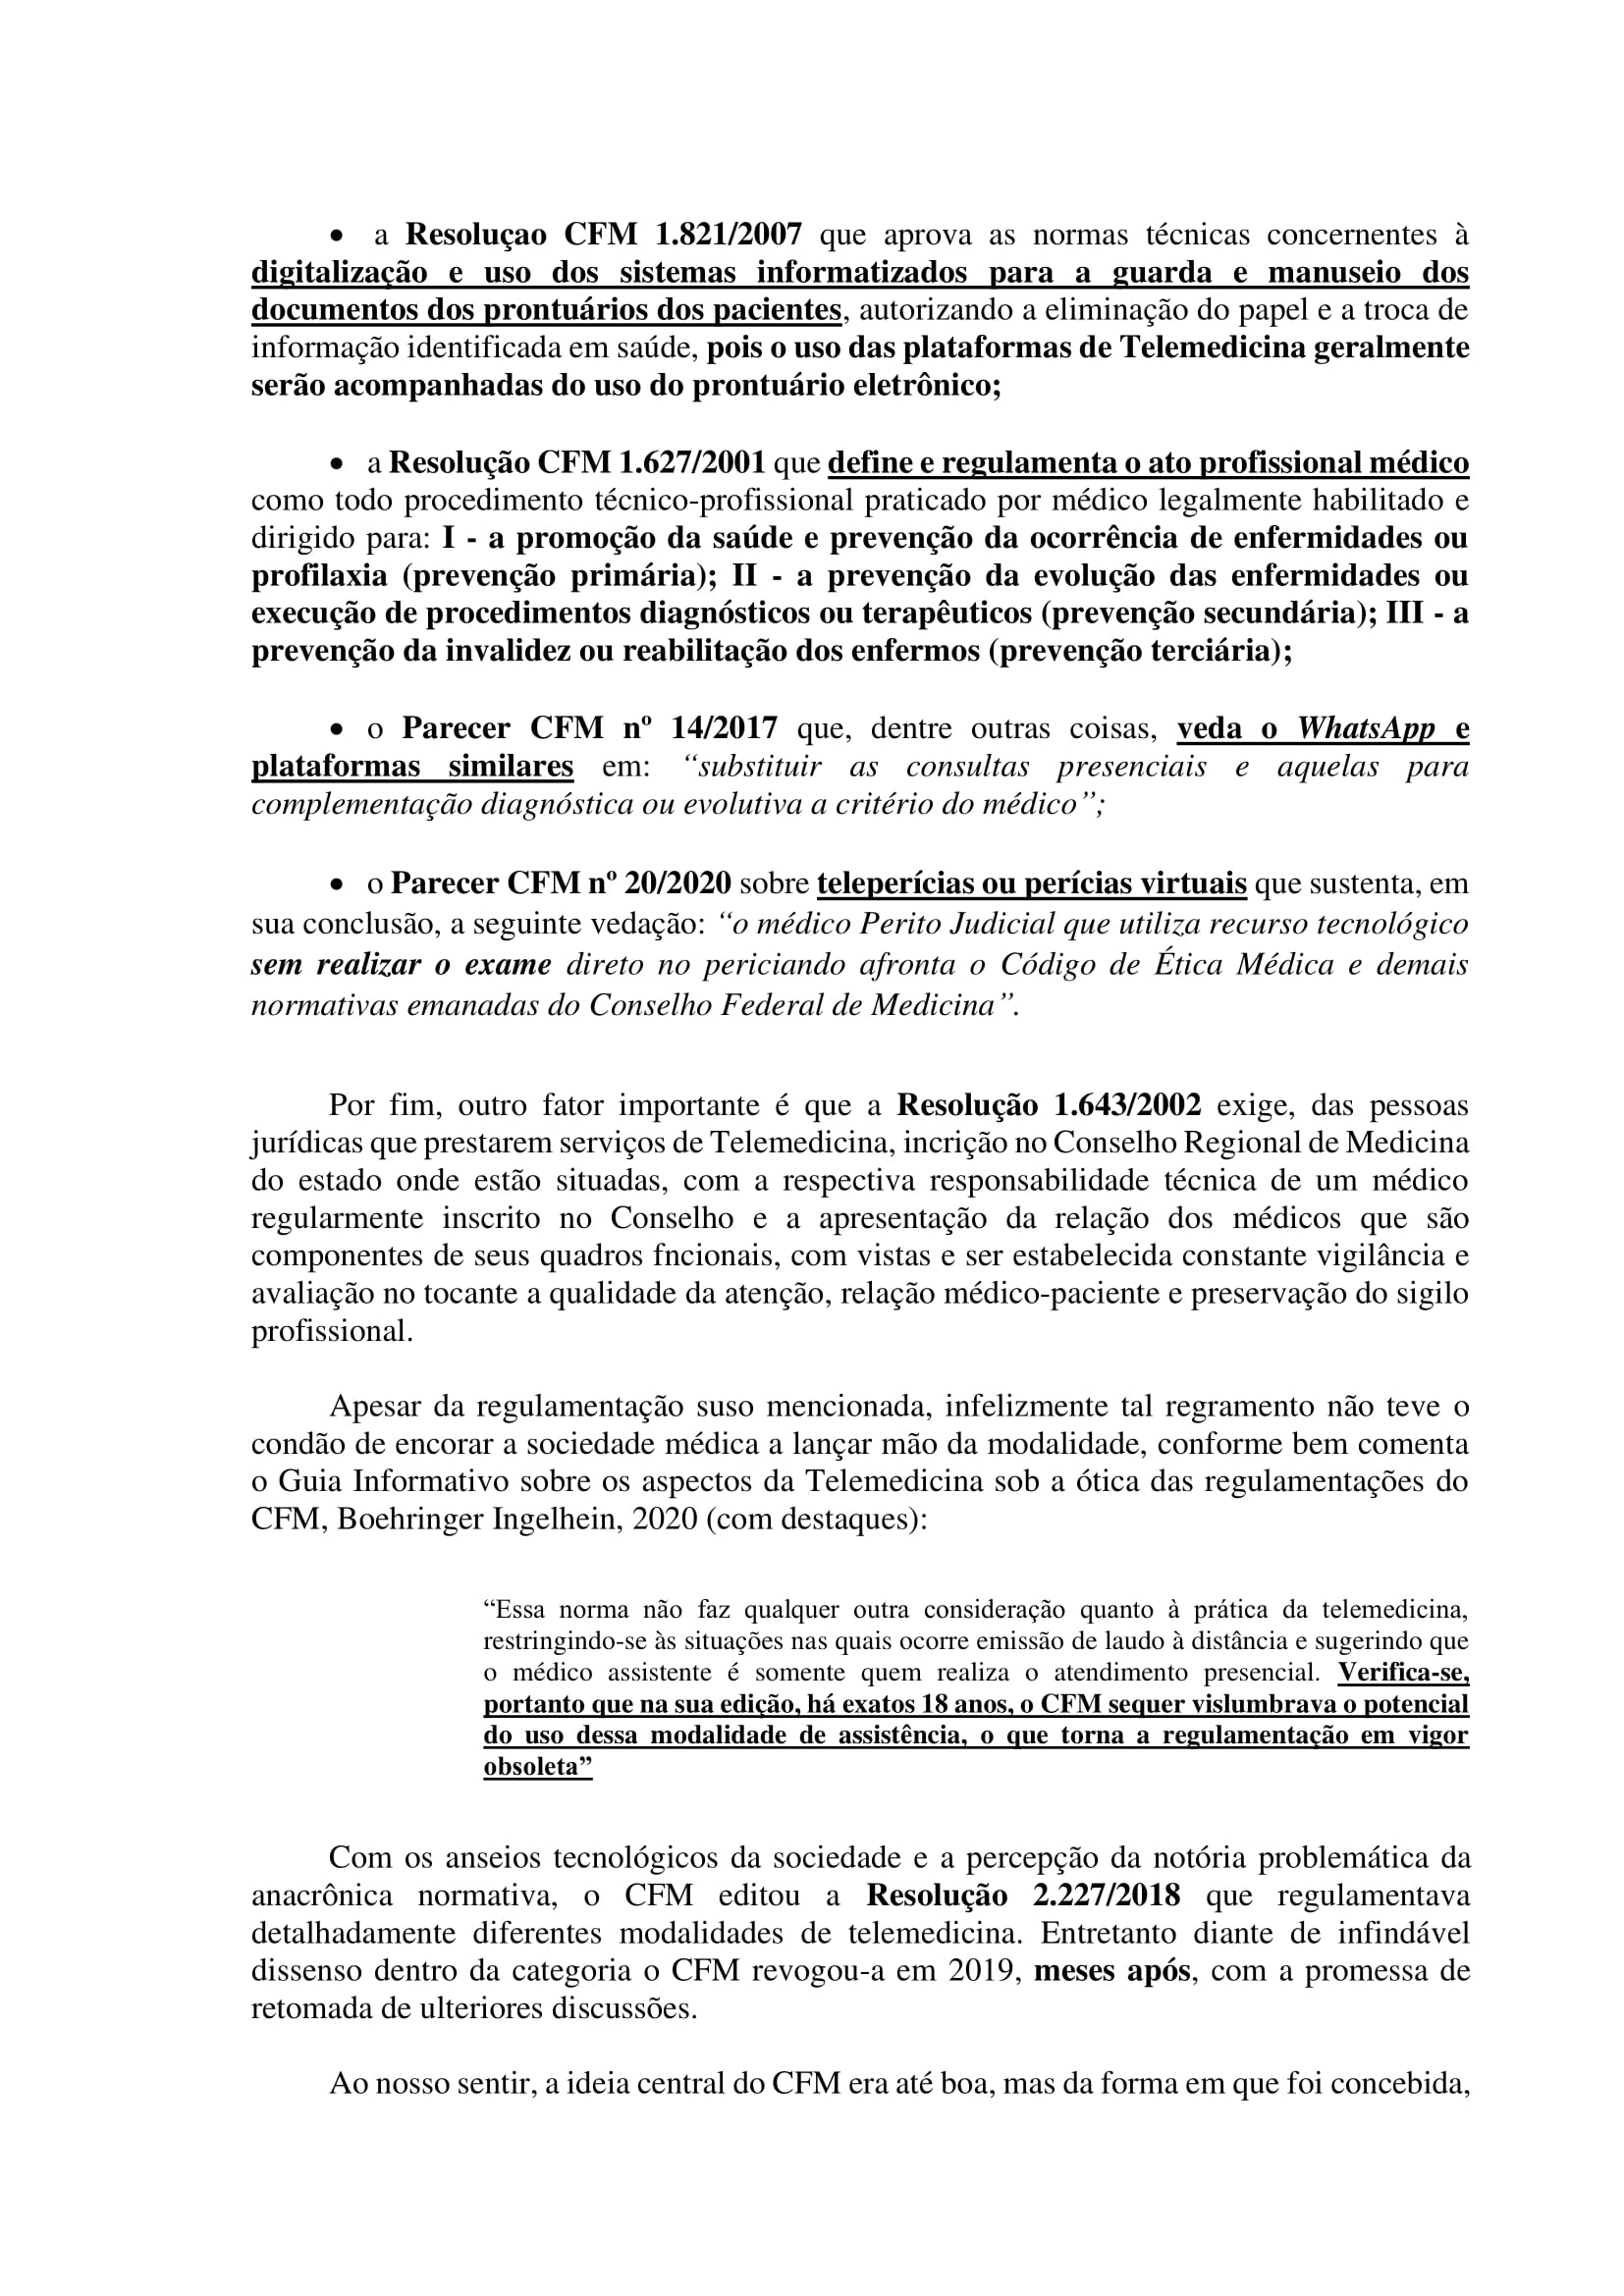 Artigo sobre Telemedicina e suas implicações regulatórias - Tiago Torres-04